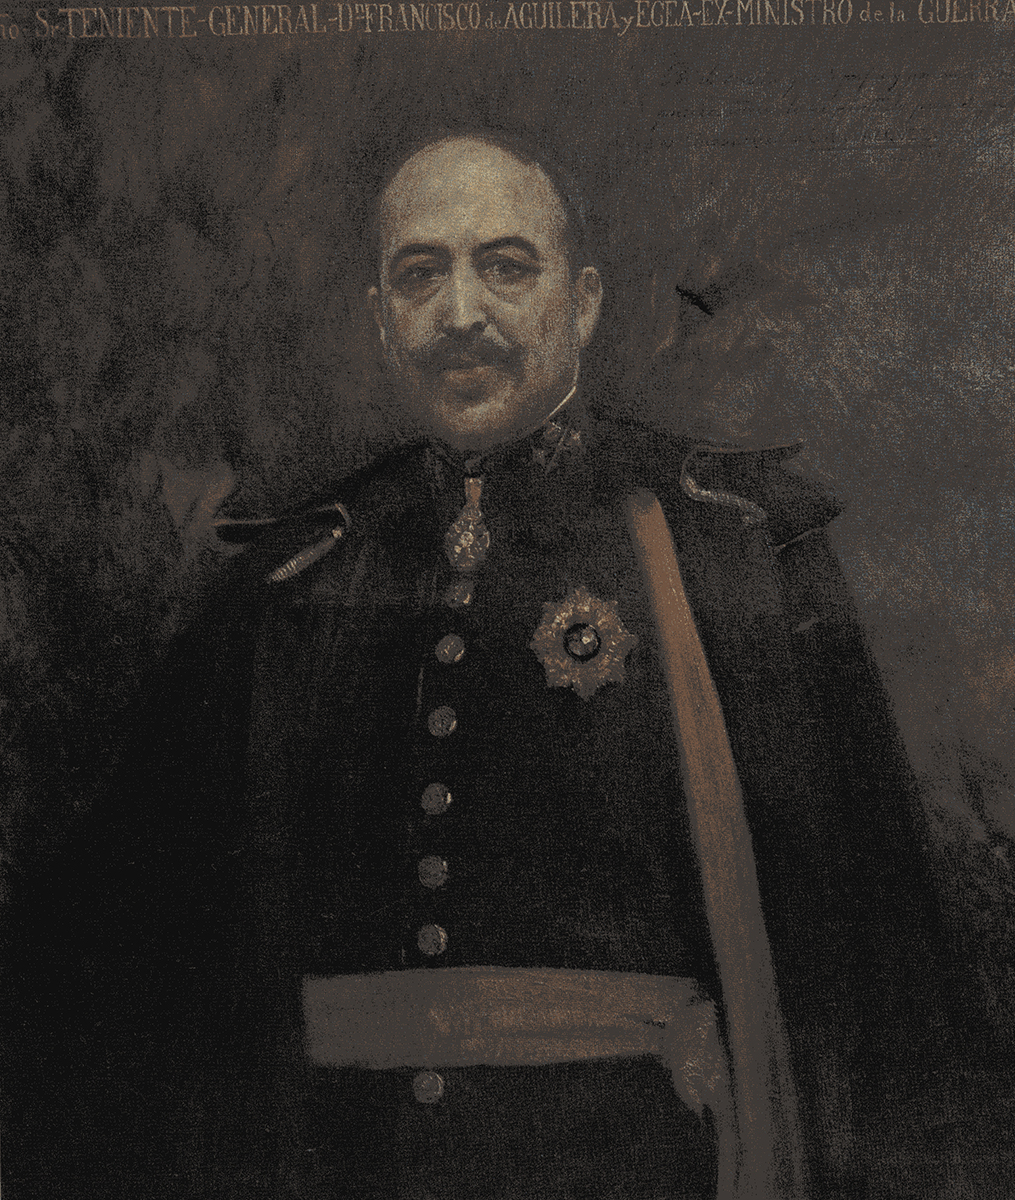 Francisco de Aguilera y Egea. General Aguilera